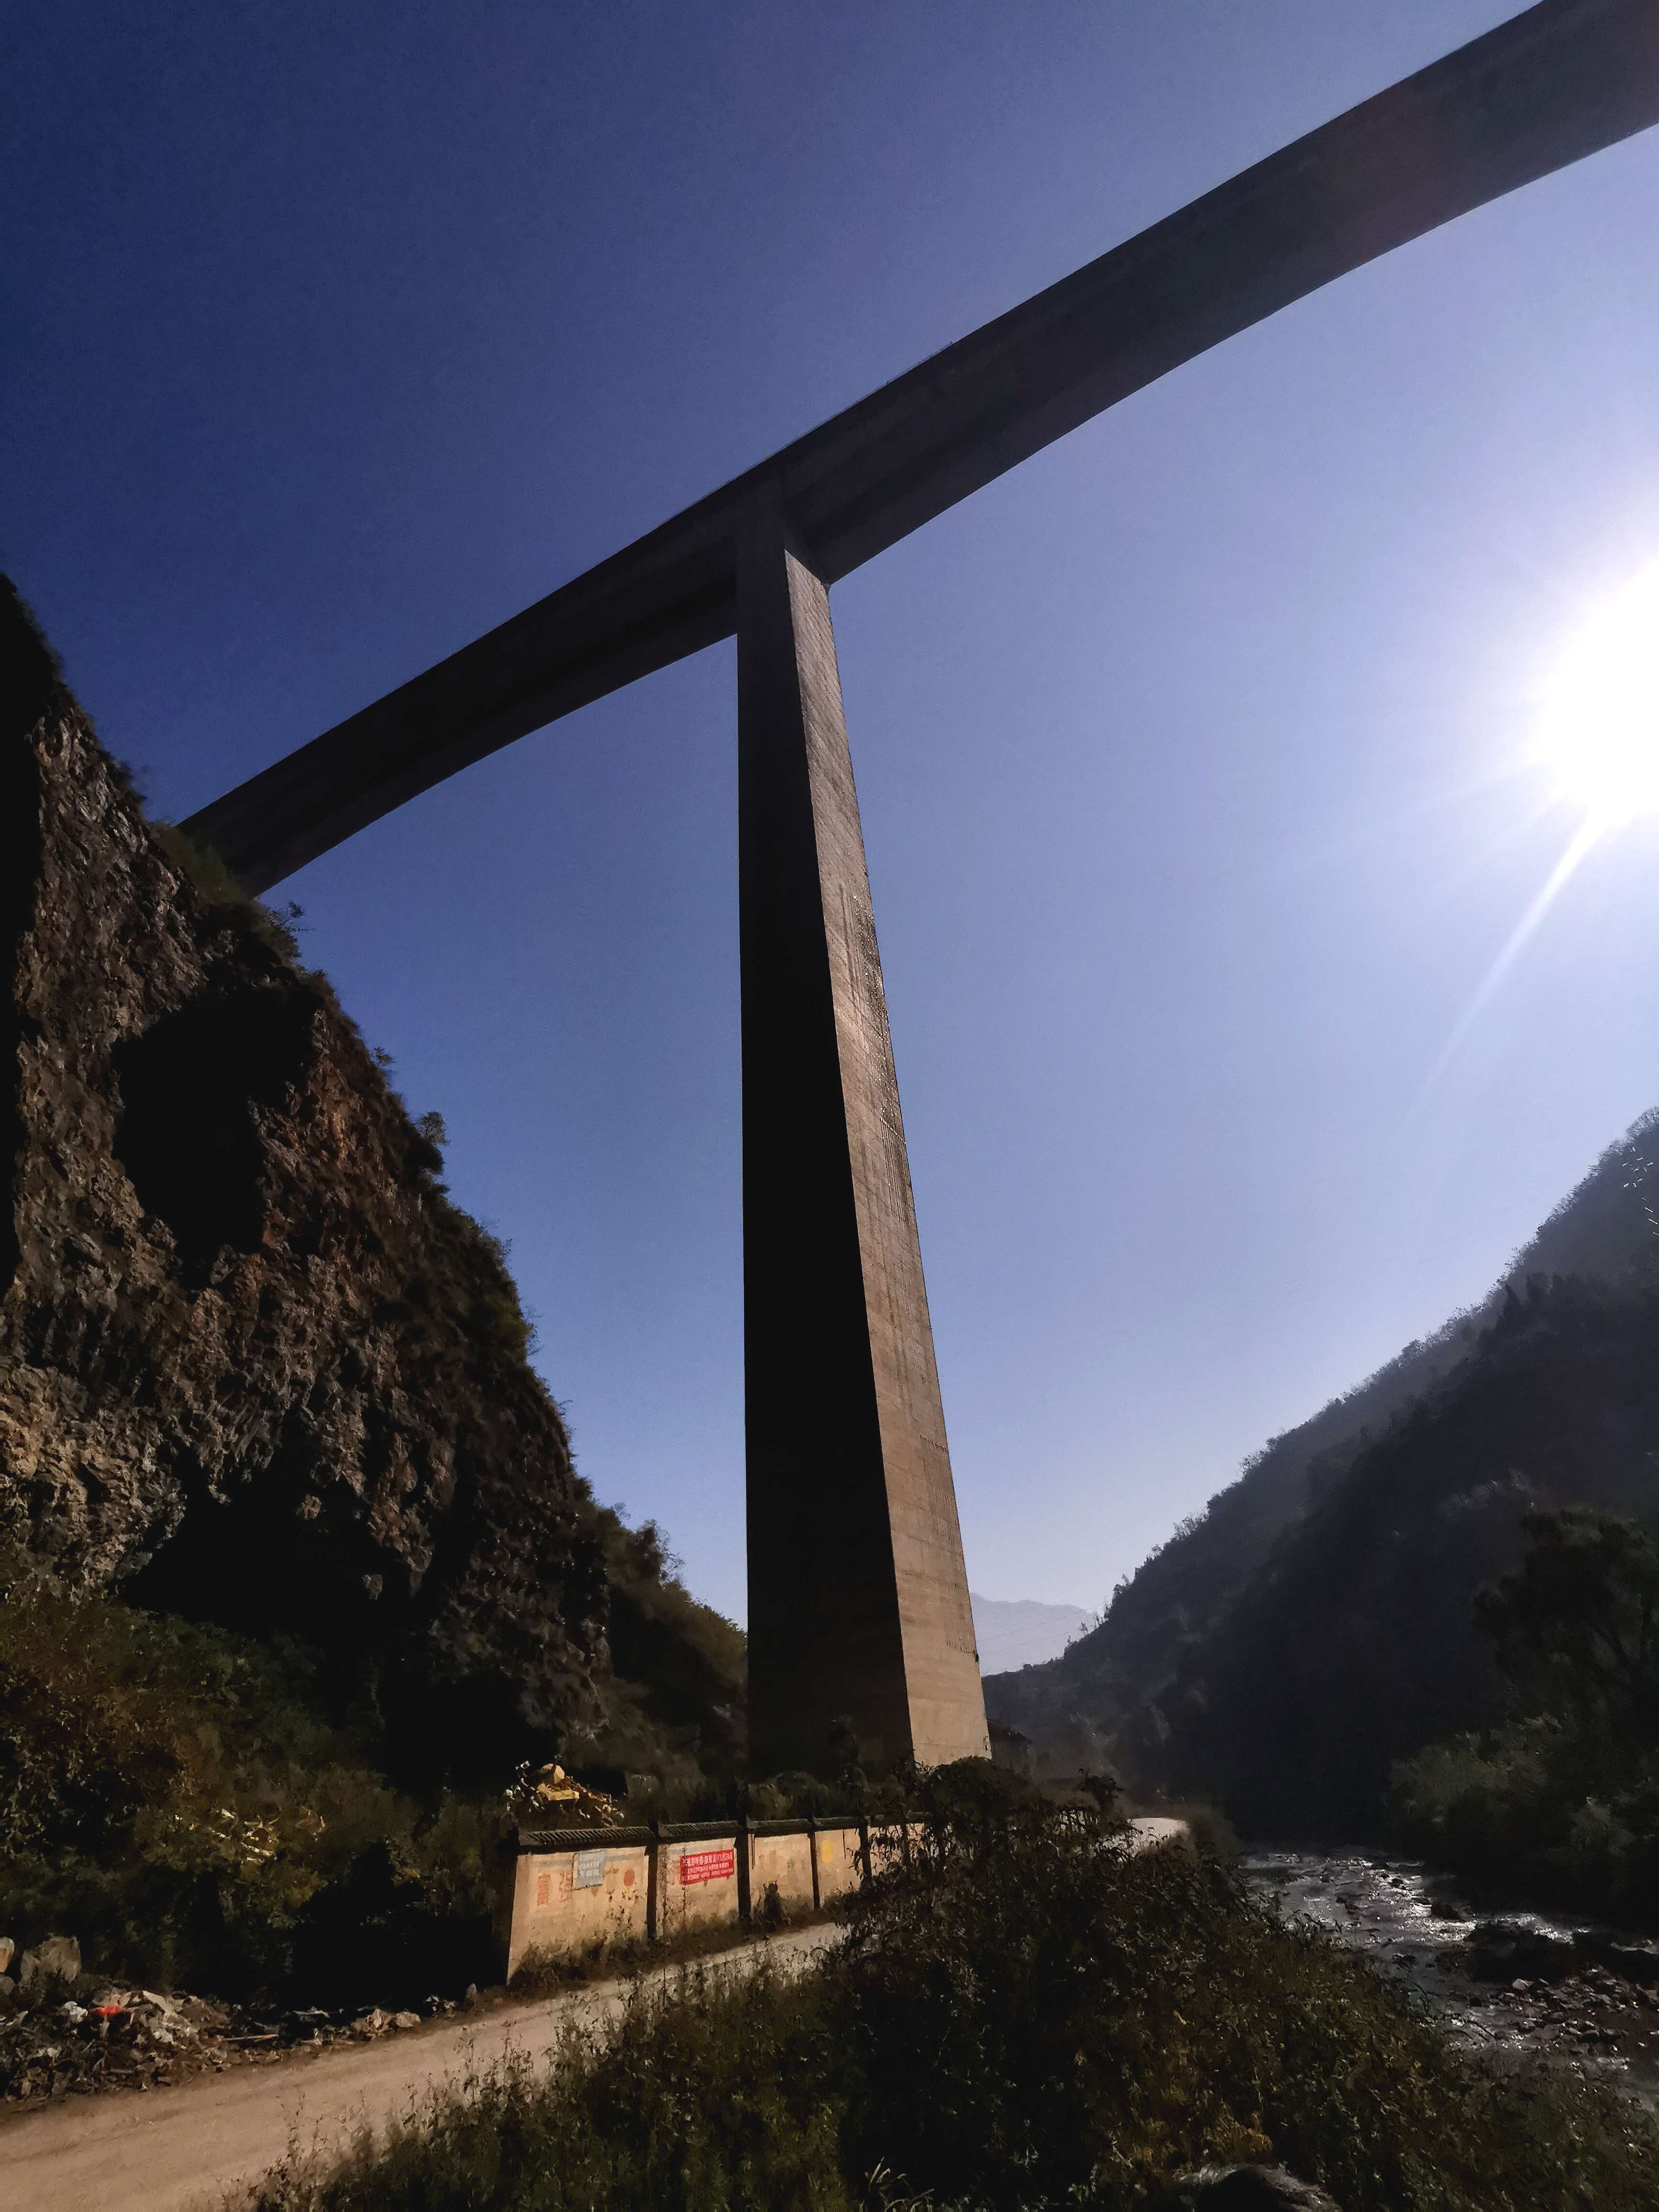 云舞空城 的想法: 贵州毕节的赫章特大桥,195米高的第